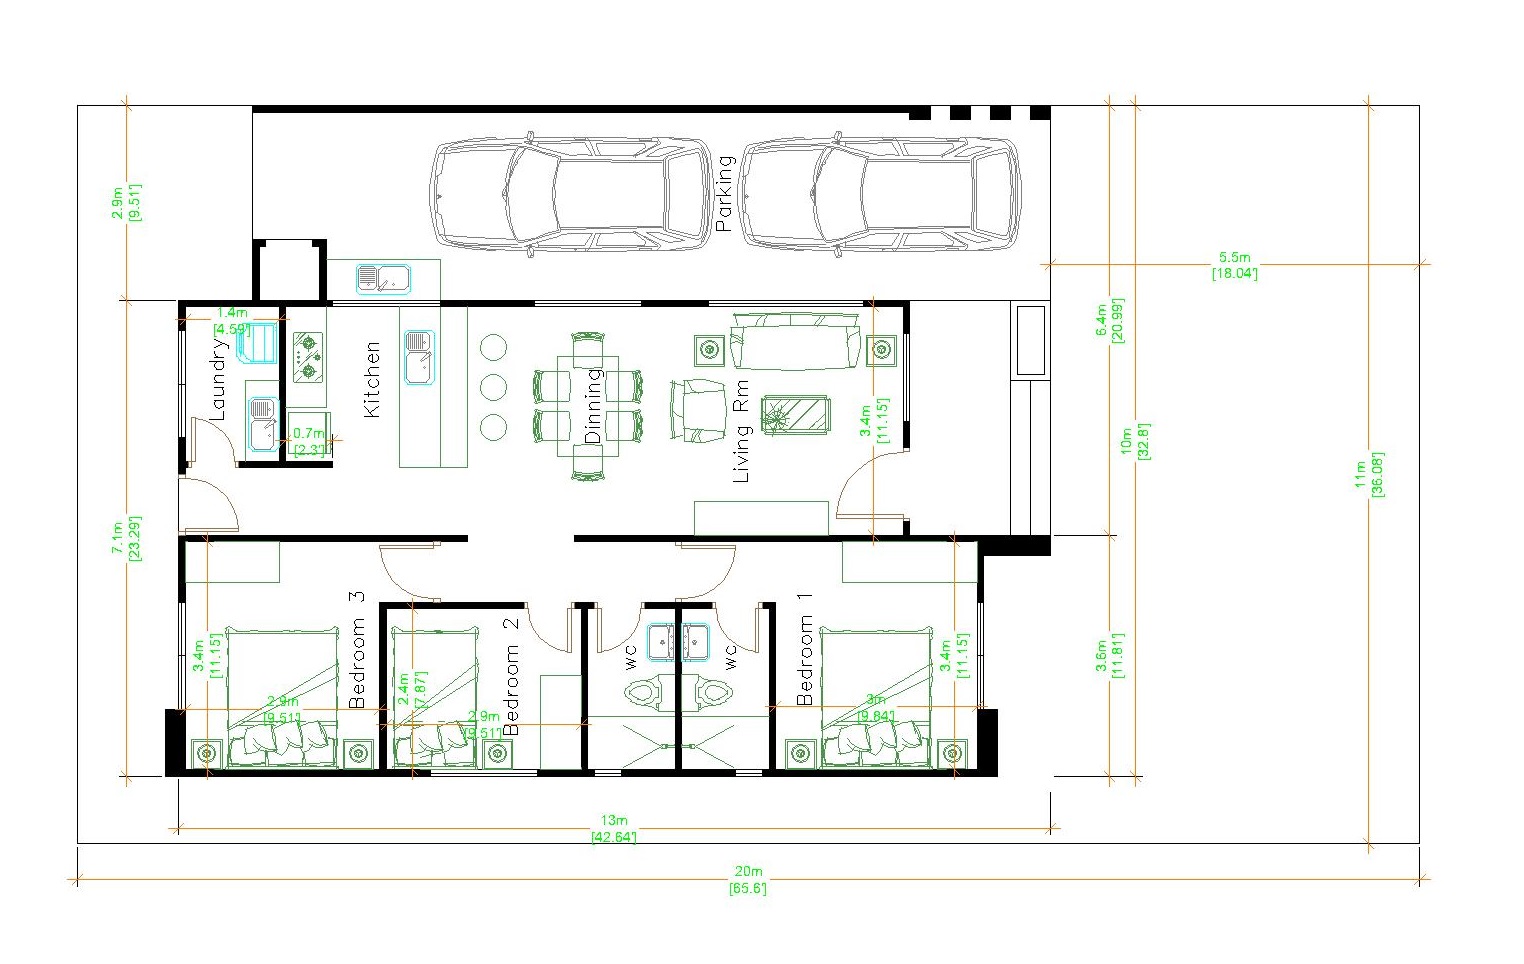 House Design 3d 10x13 Meter 33x43 Feet 3 Bedrooms Terrace Roof